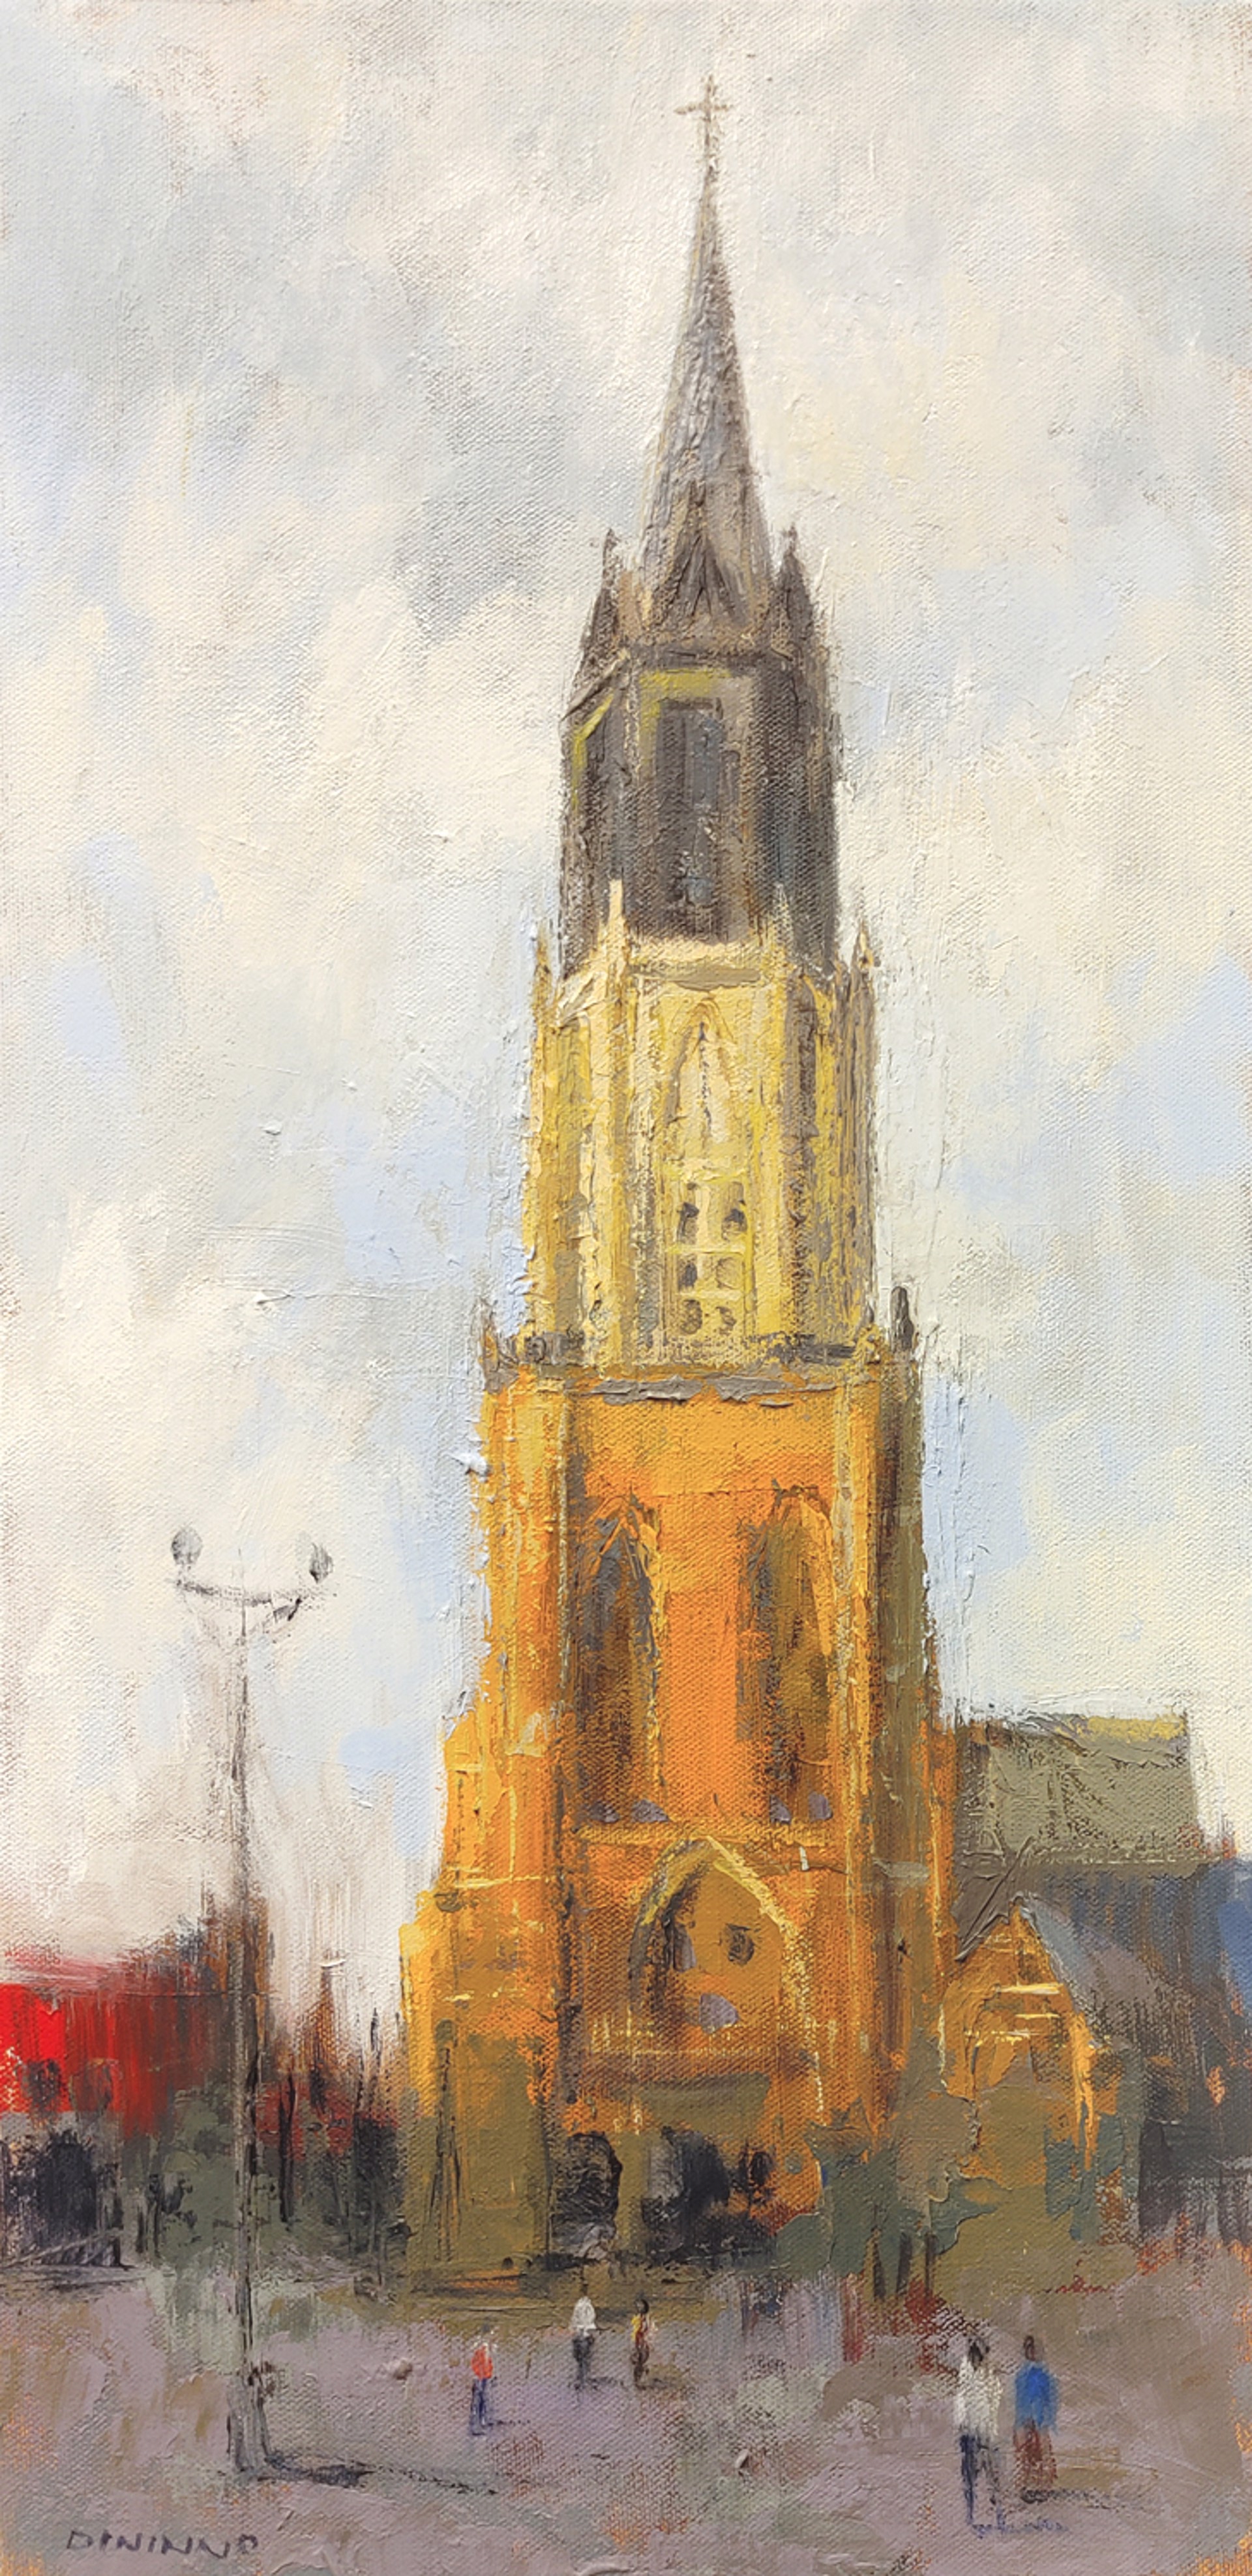 Nieuwe Kerk in Delft by Steve Dininno